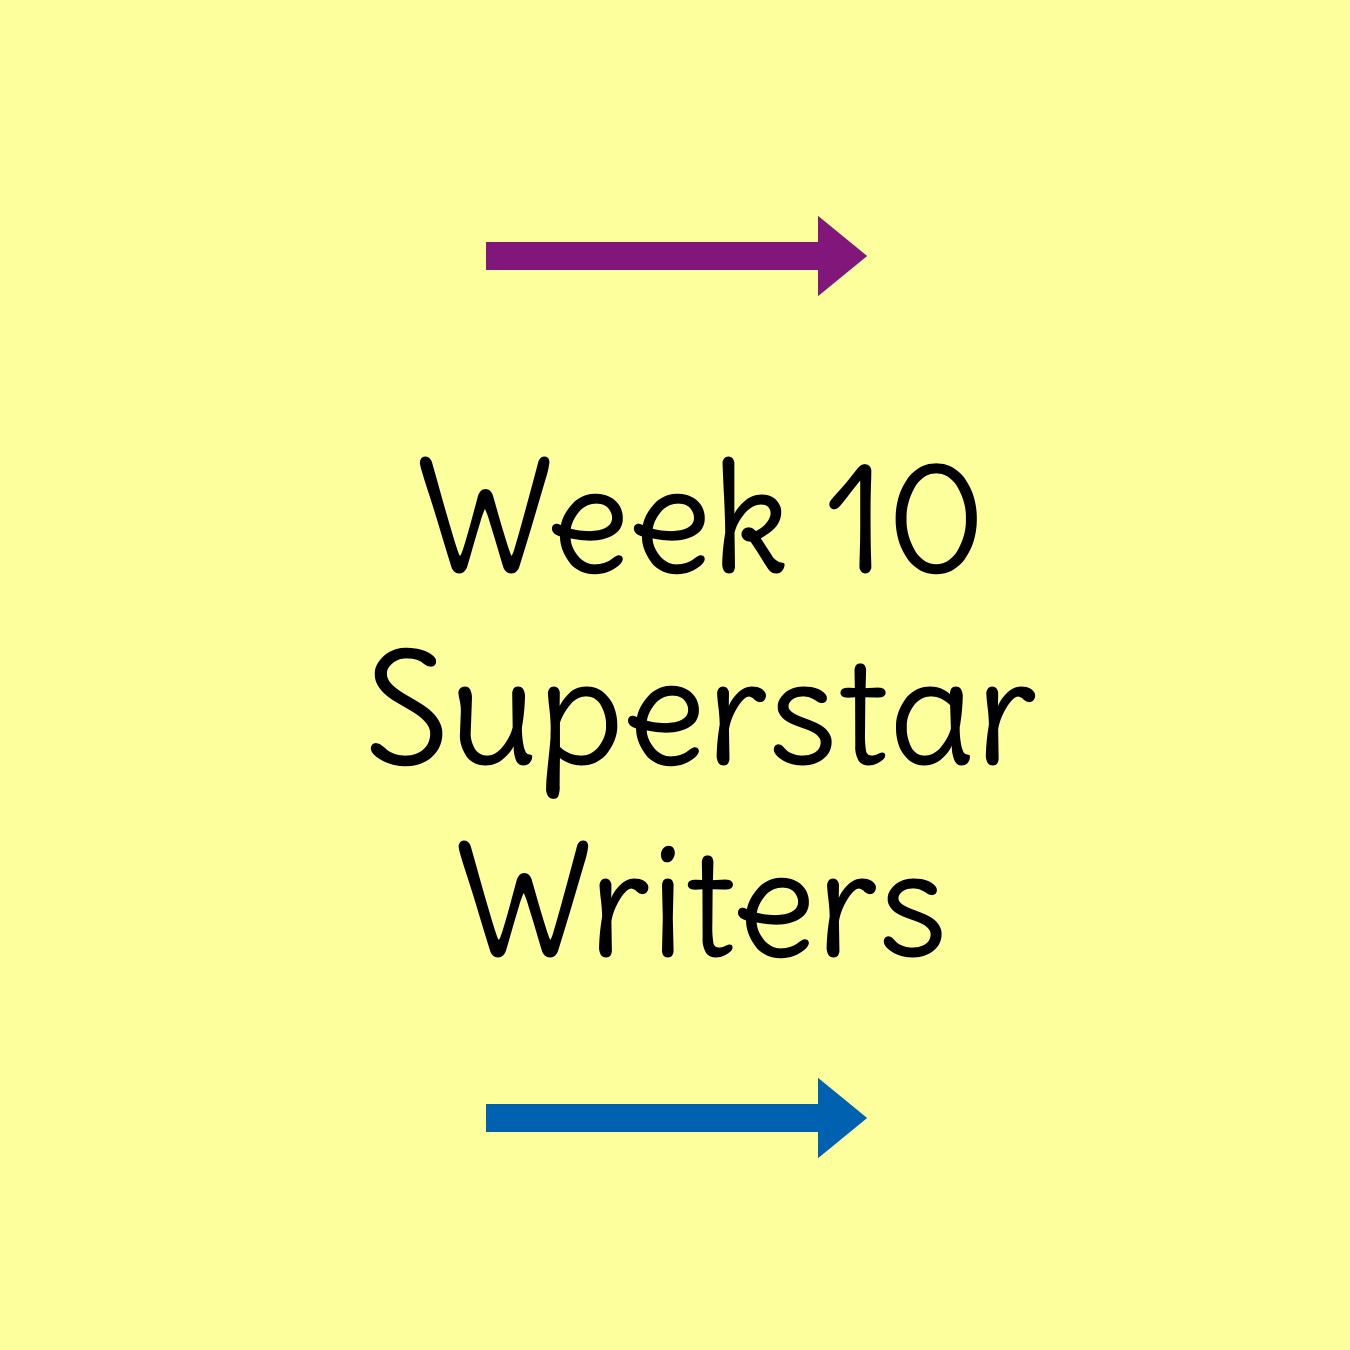 Week 10 Superstar Writers